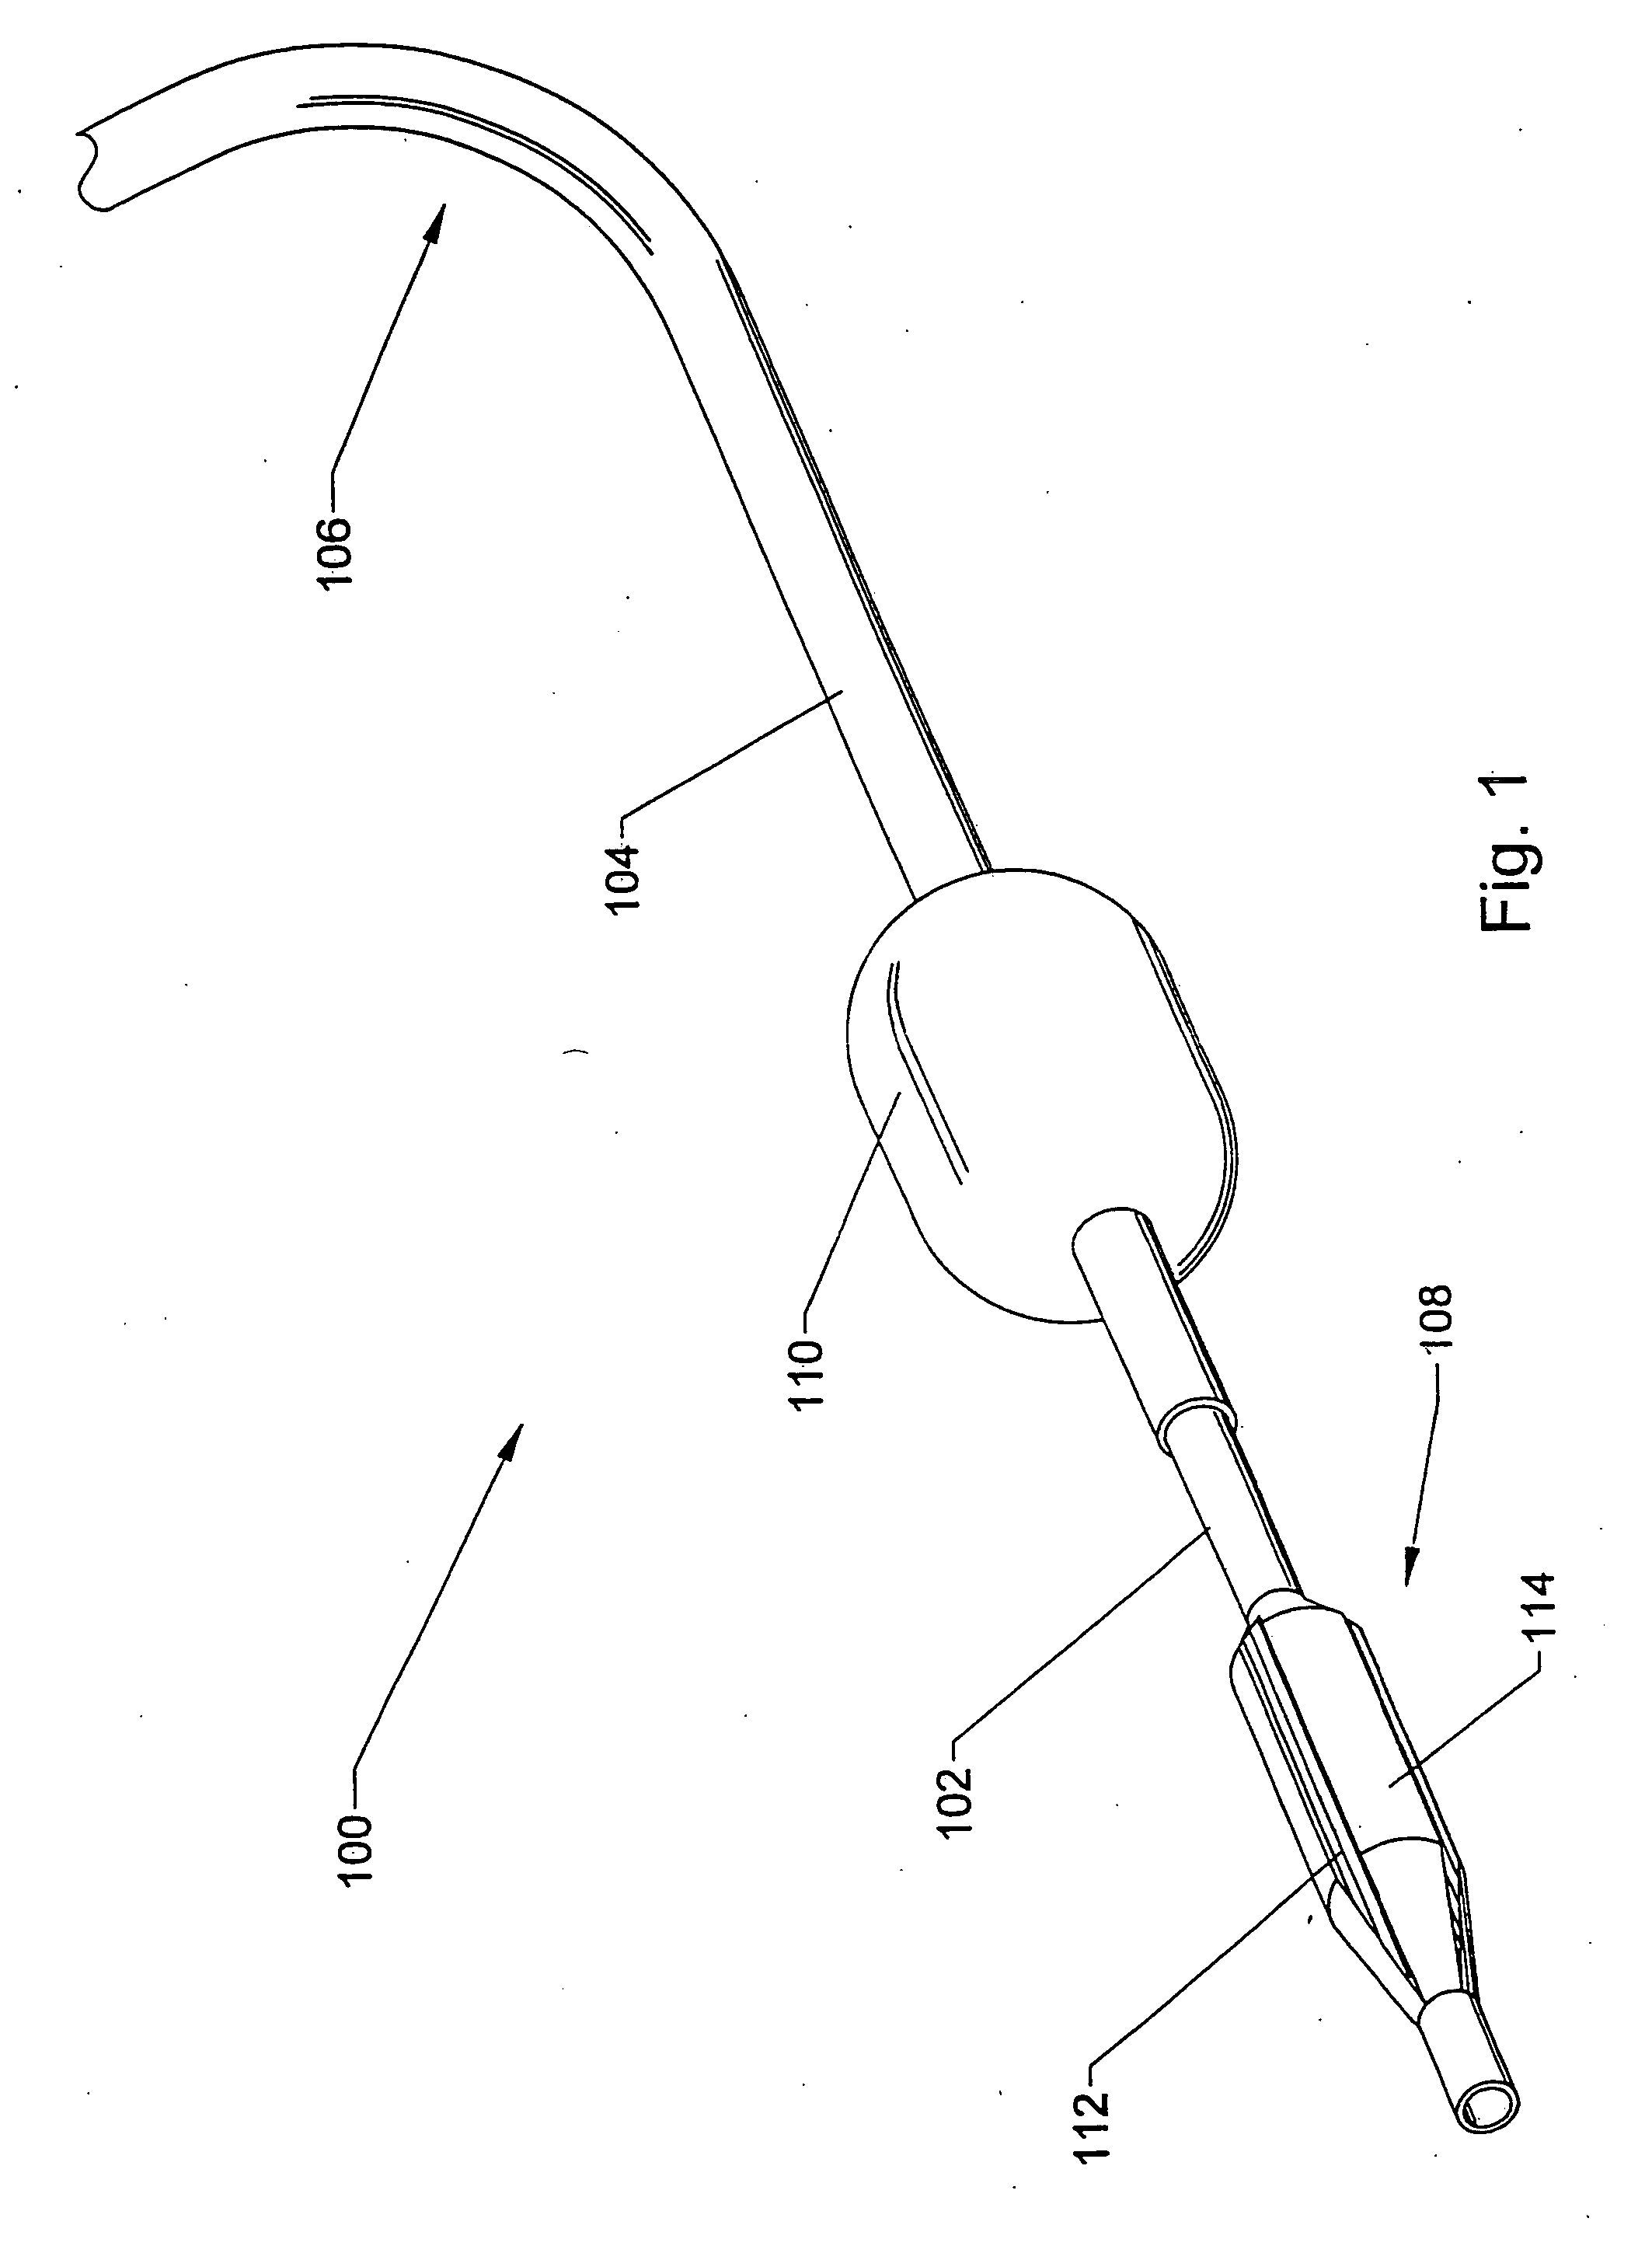 Methods using a dual balloon telescoping guiding catheter